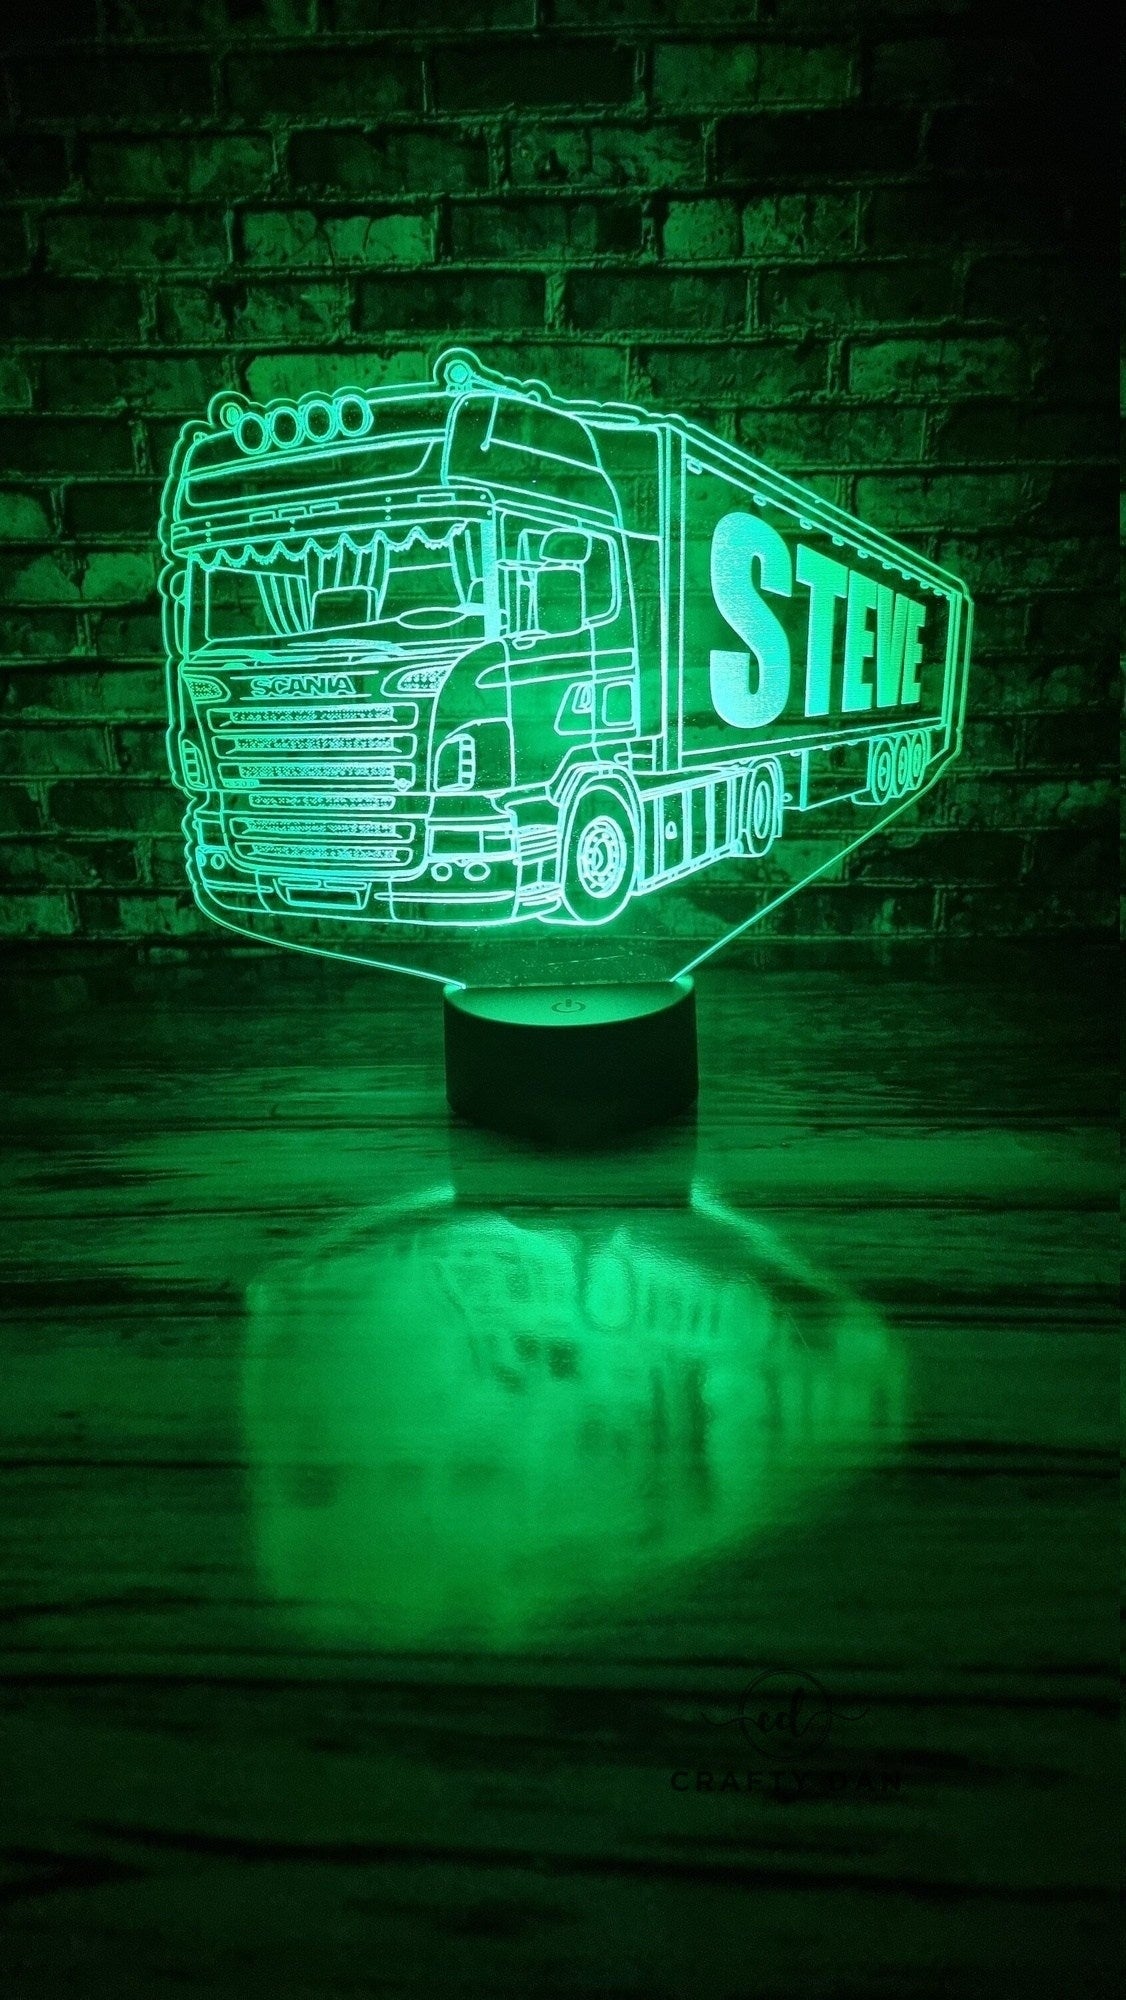 DECORATIVE LIGHTS GESTURE Light LED Sign Language Lamp Truck $32.85 -  PicClick AU